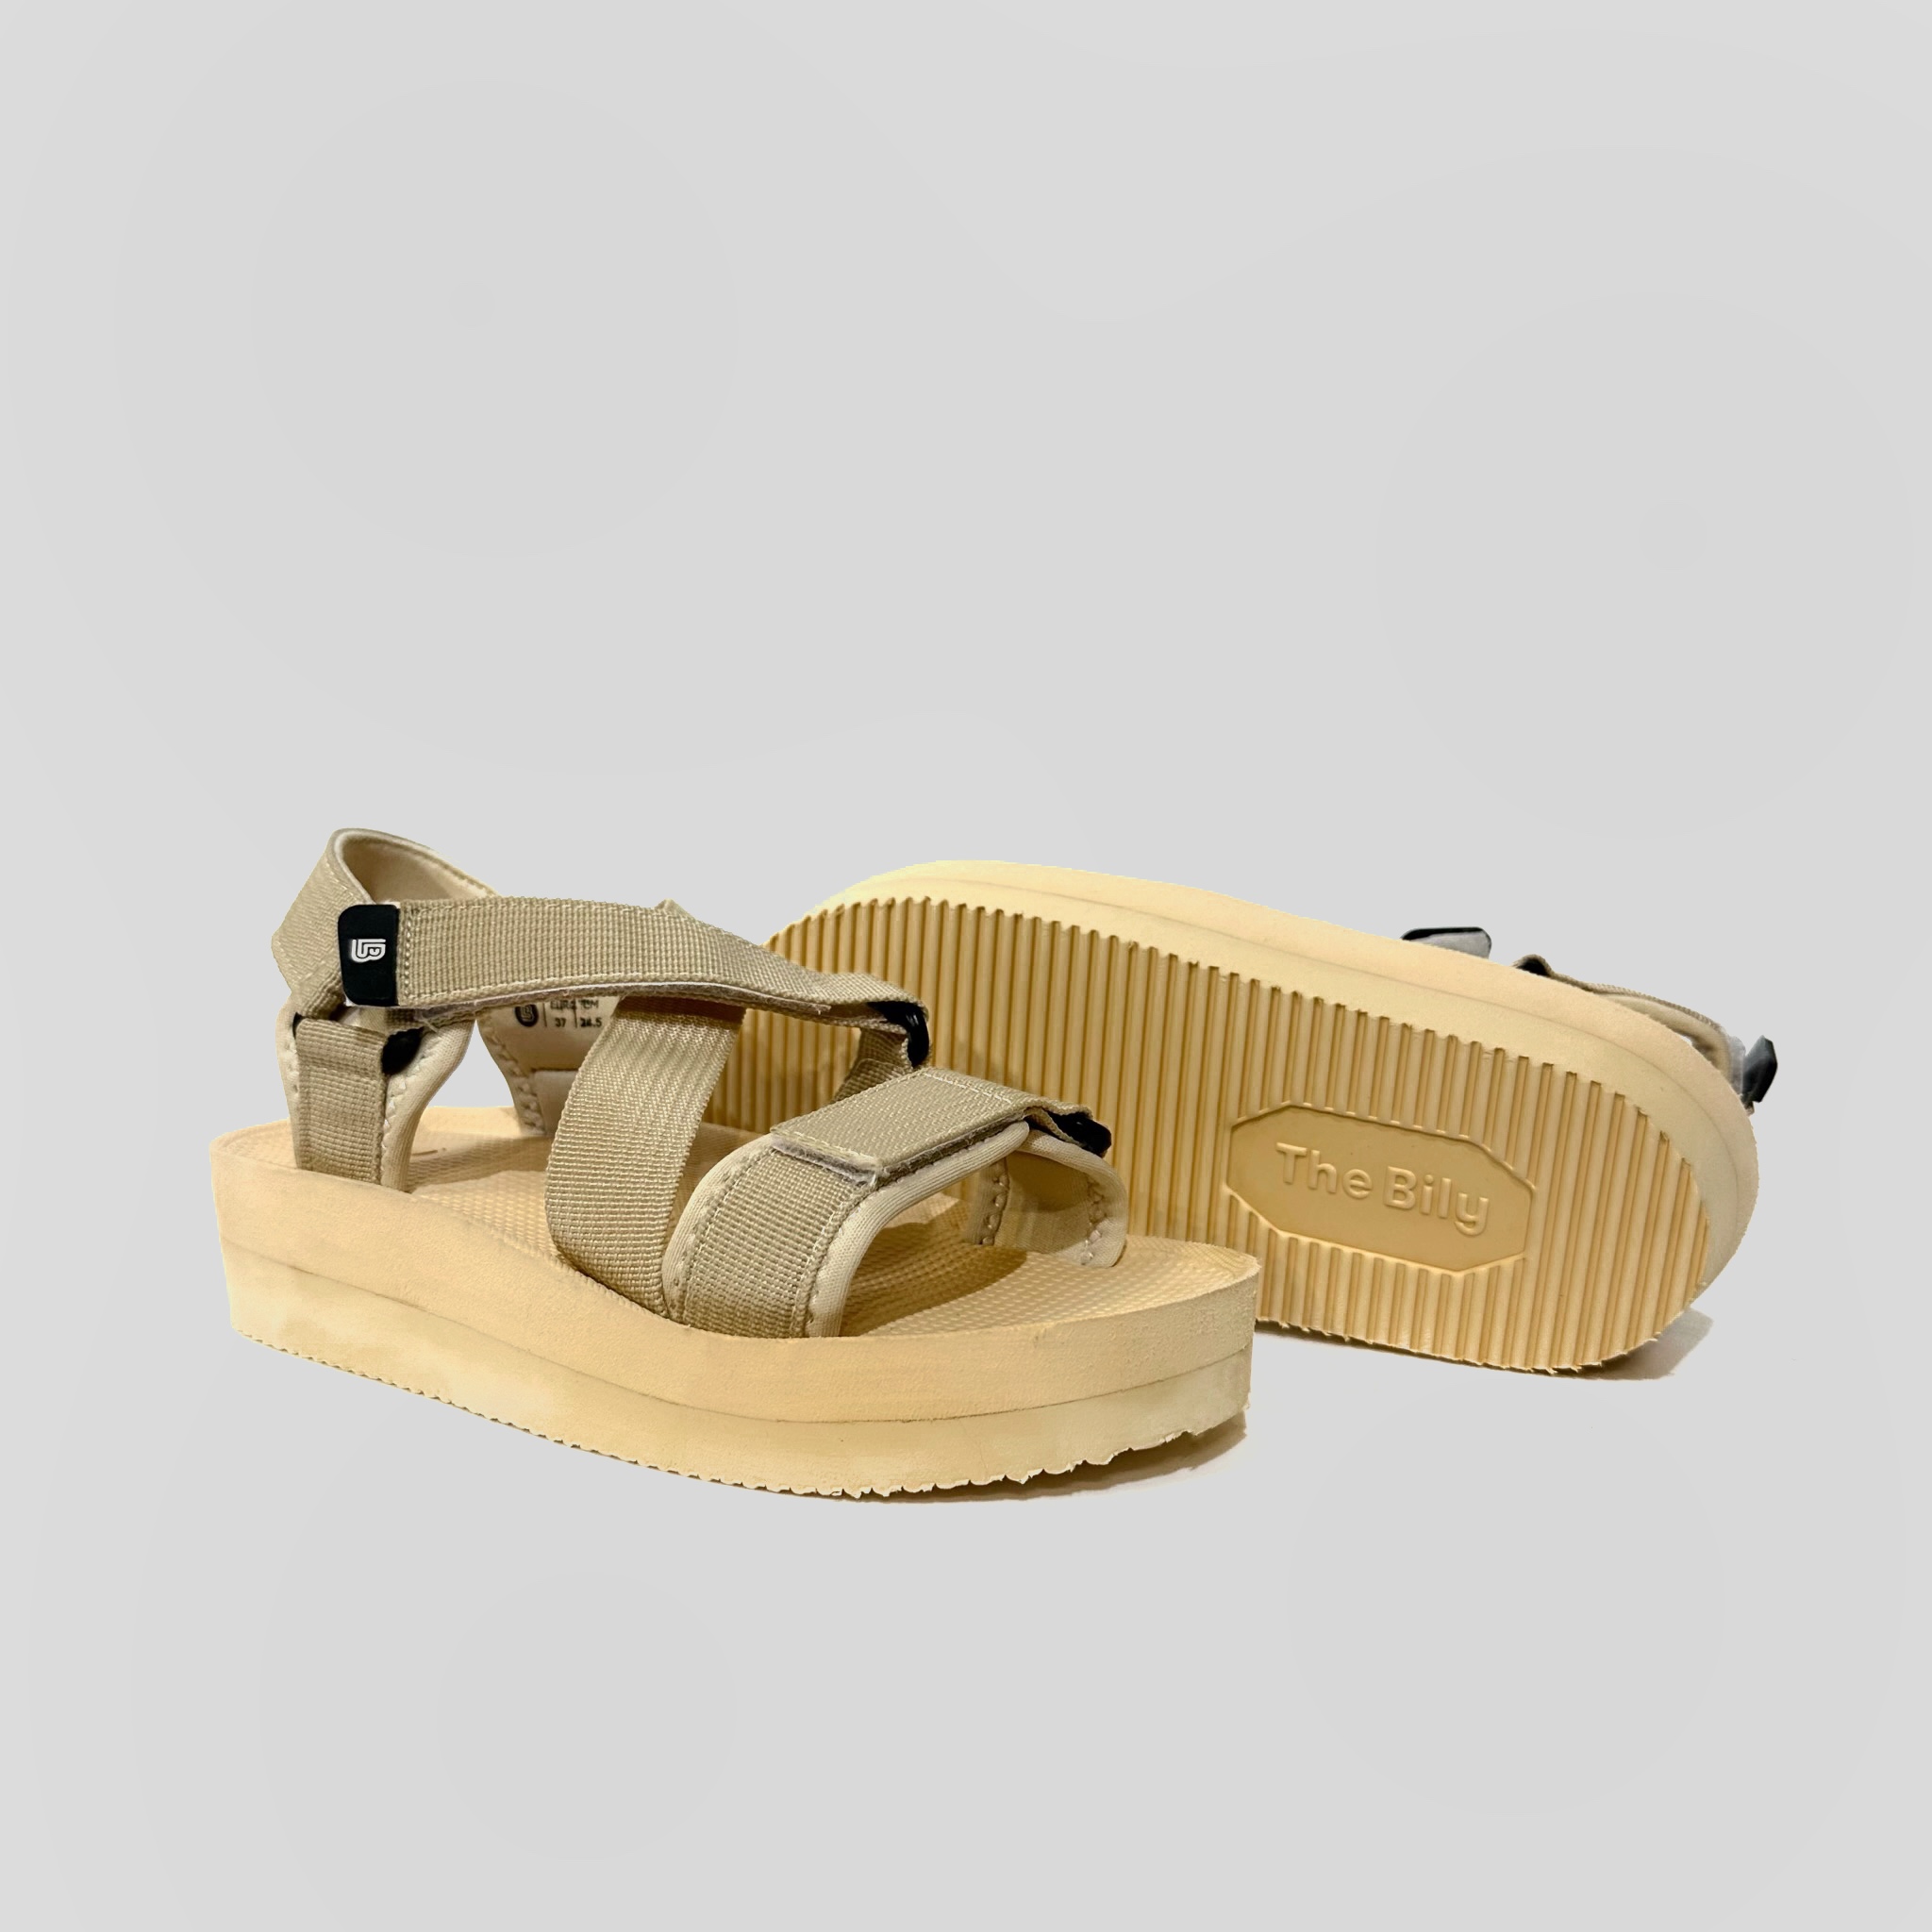 Giày Sandal Nữ The Bily 02W Quai Chéo Đôi - Màu Kem BL02WK